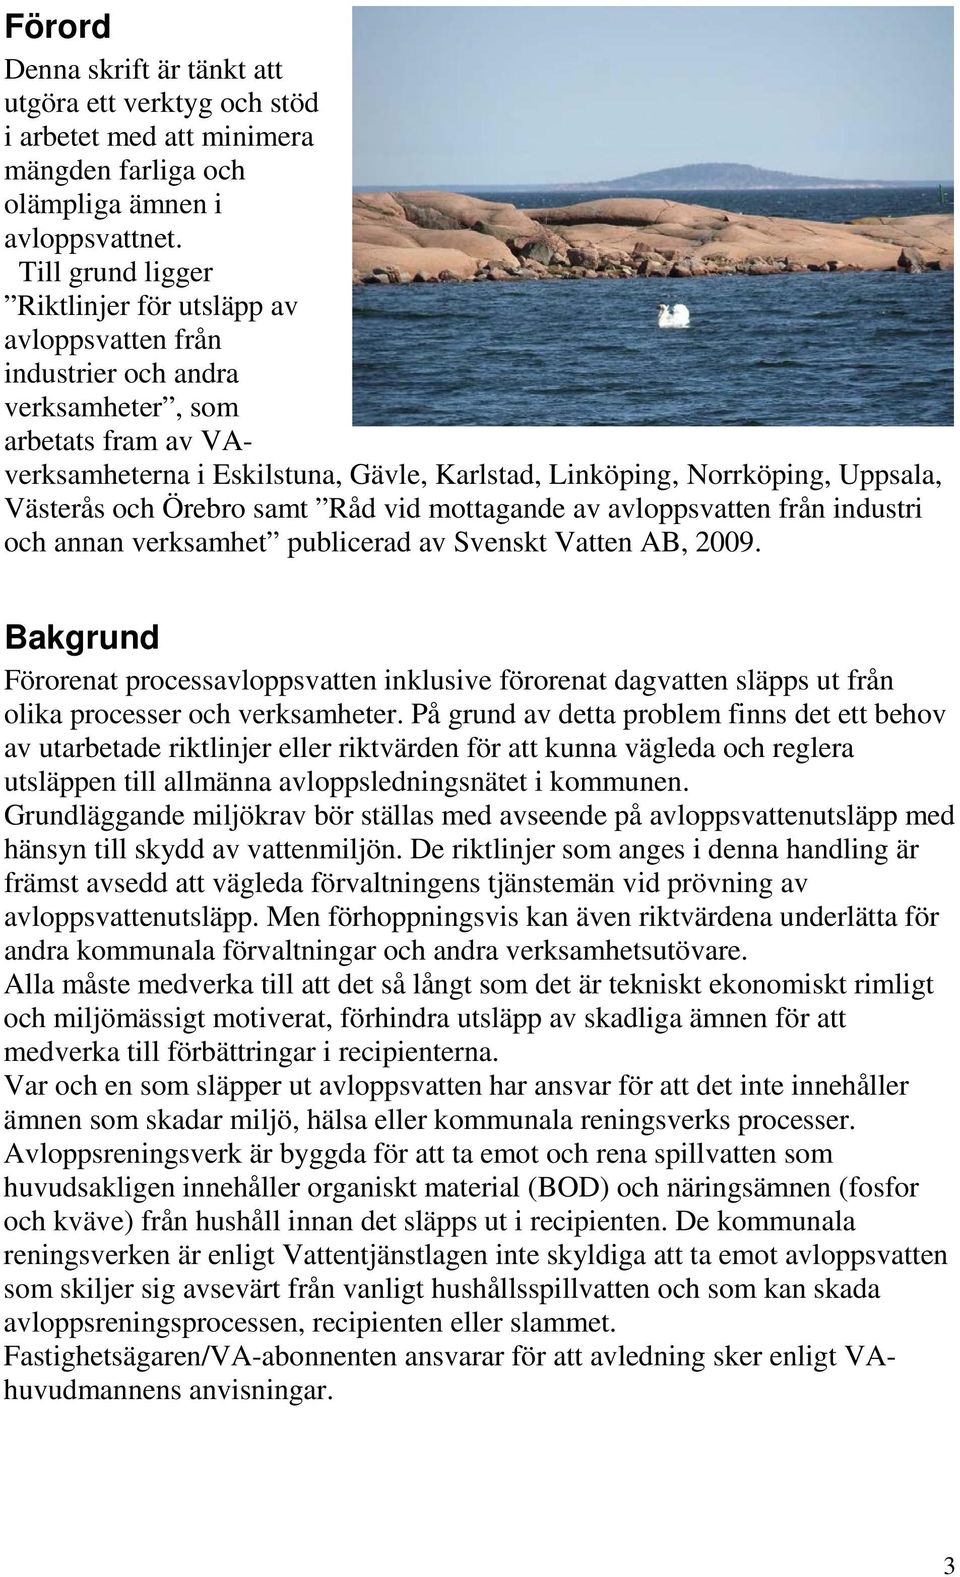 Västerås och Örebro samt Råd vid mottagande av avloppsvatten från industri och annan verksamhet publicerad av Svenskt Vatten AB, 2009.